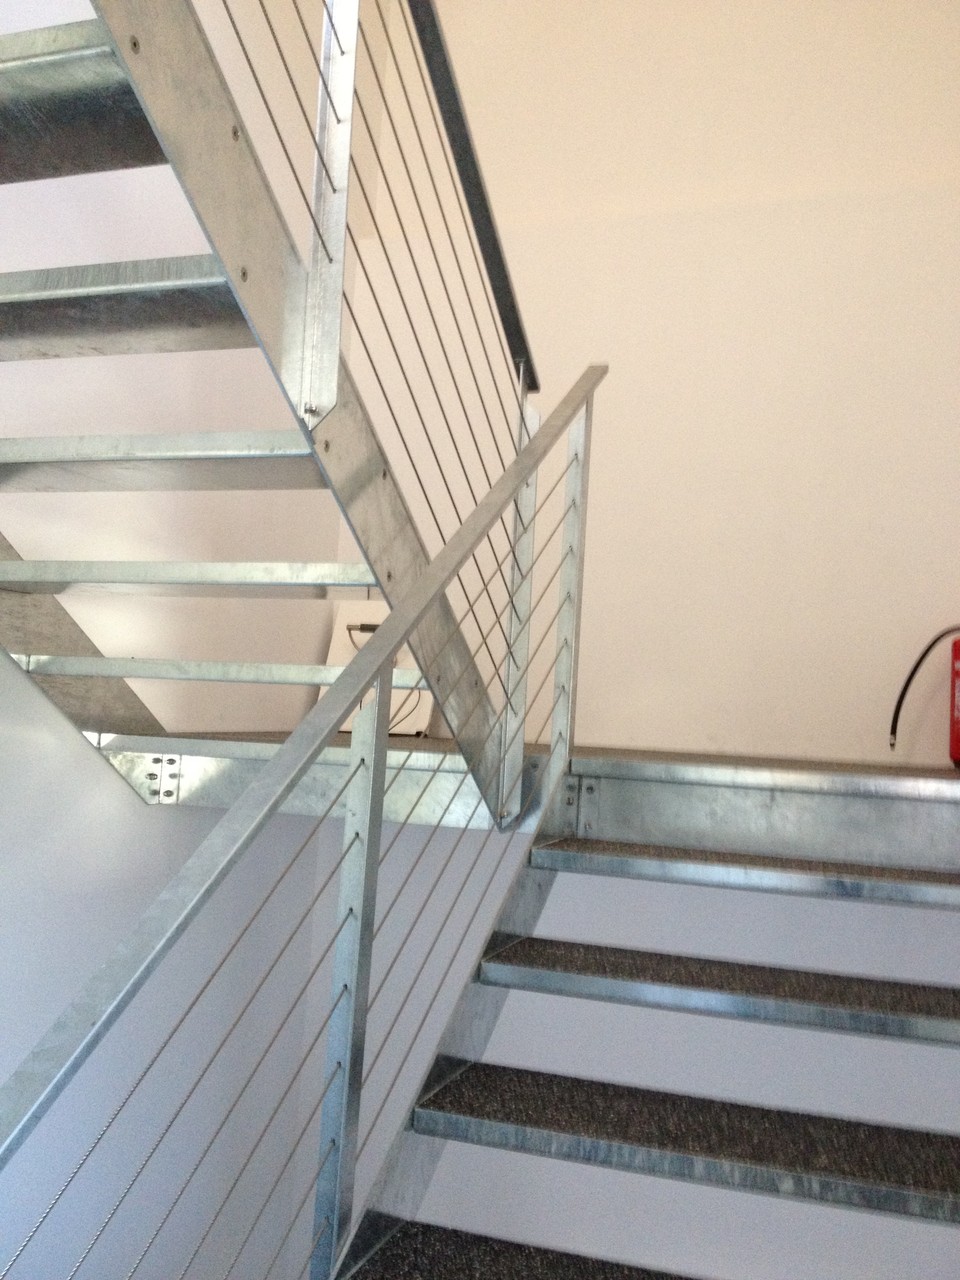 Innen-Treppe aus Stahlwangen und Blechtritte feuerverzinkt - Tritte ausgegossen und mit Teppich belegt - Visp - Wallis